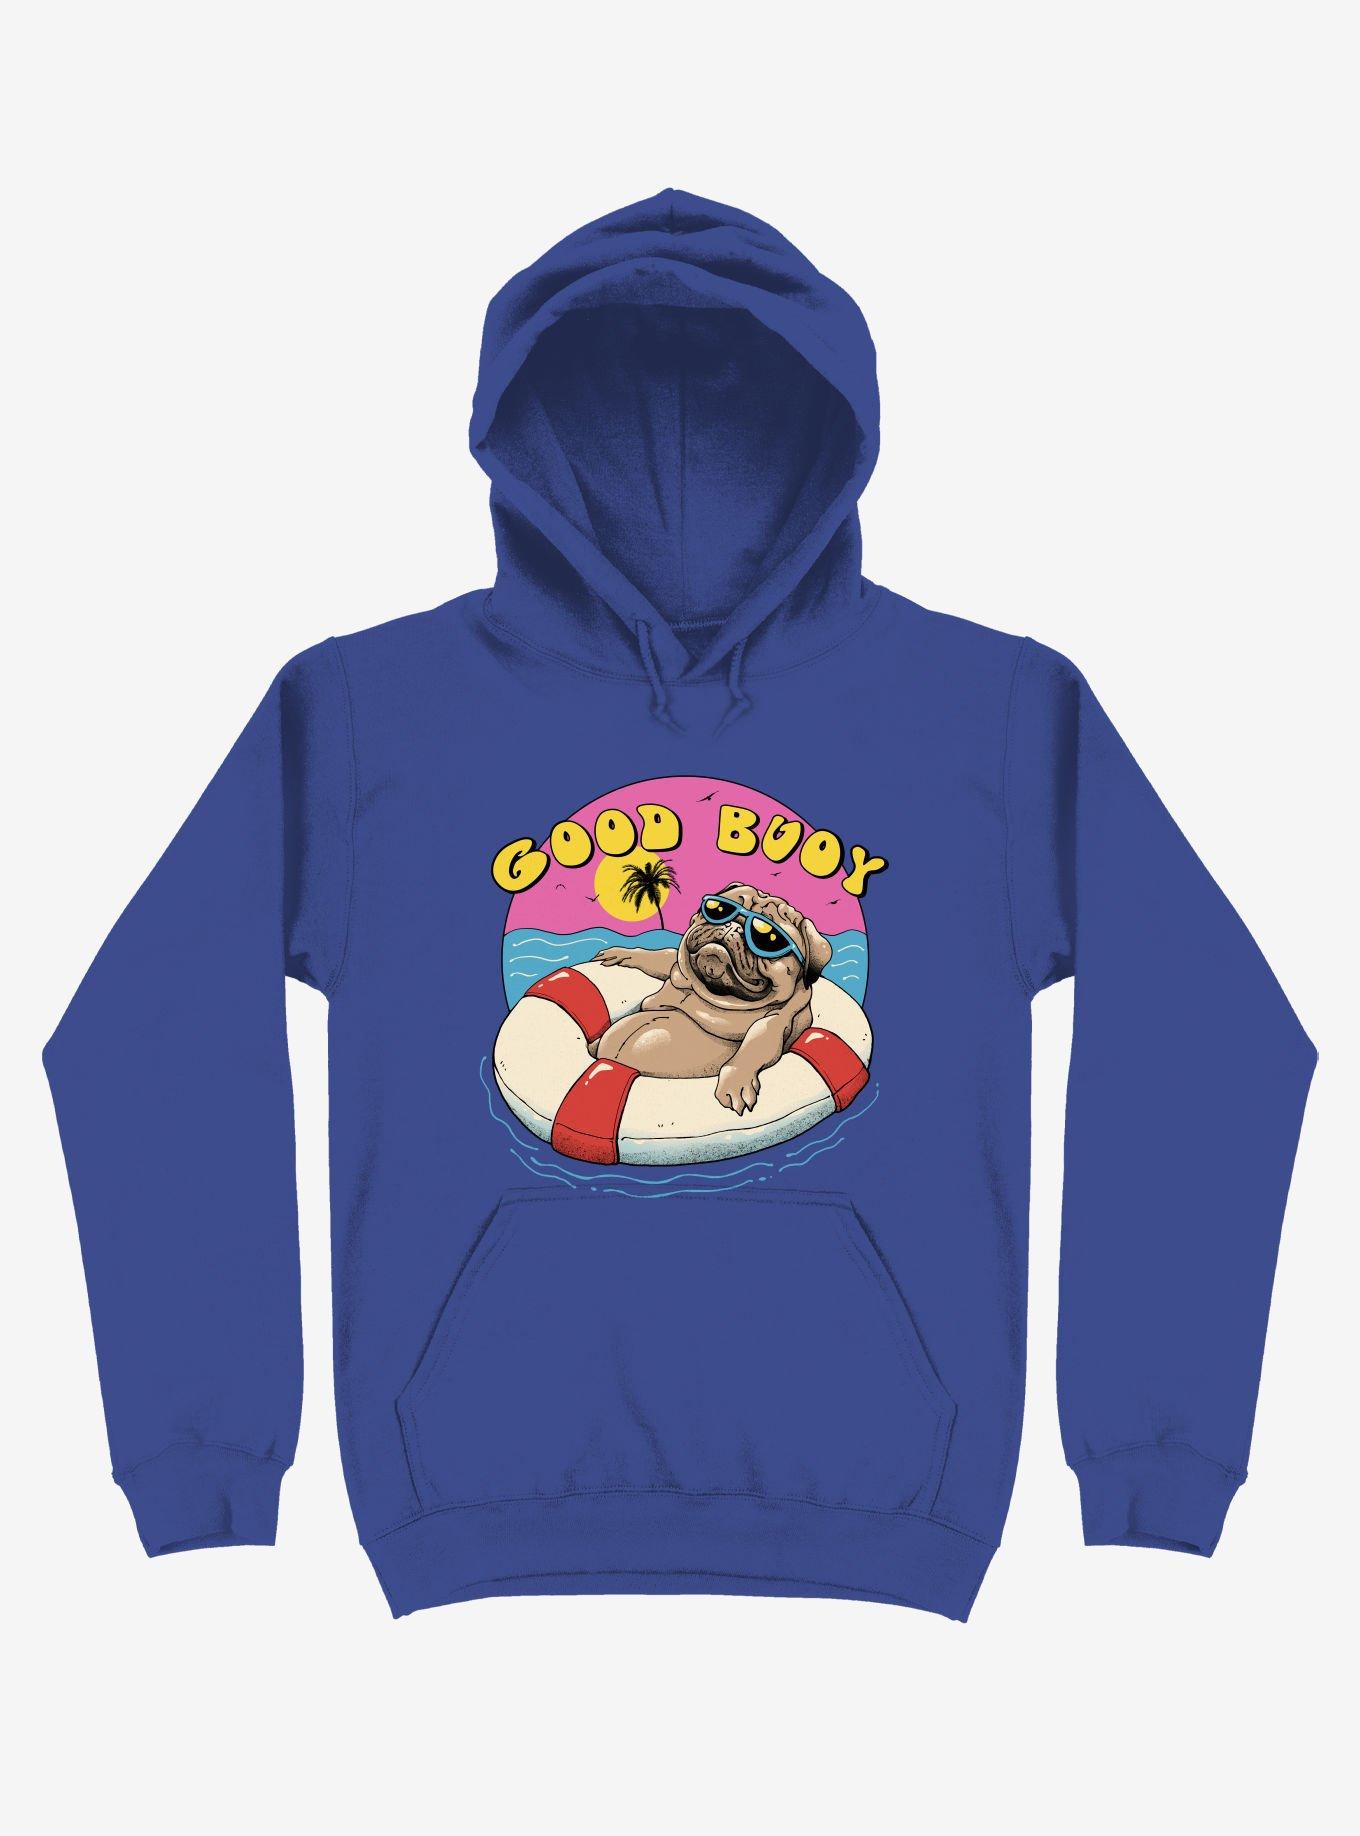 Ocean Pug Good Buoy! Royal Blue Hoodie